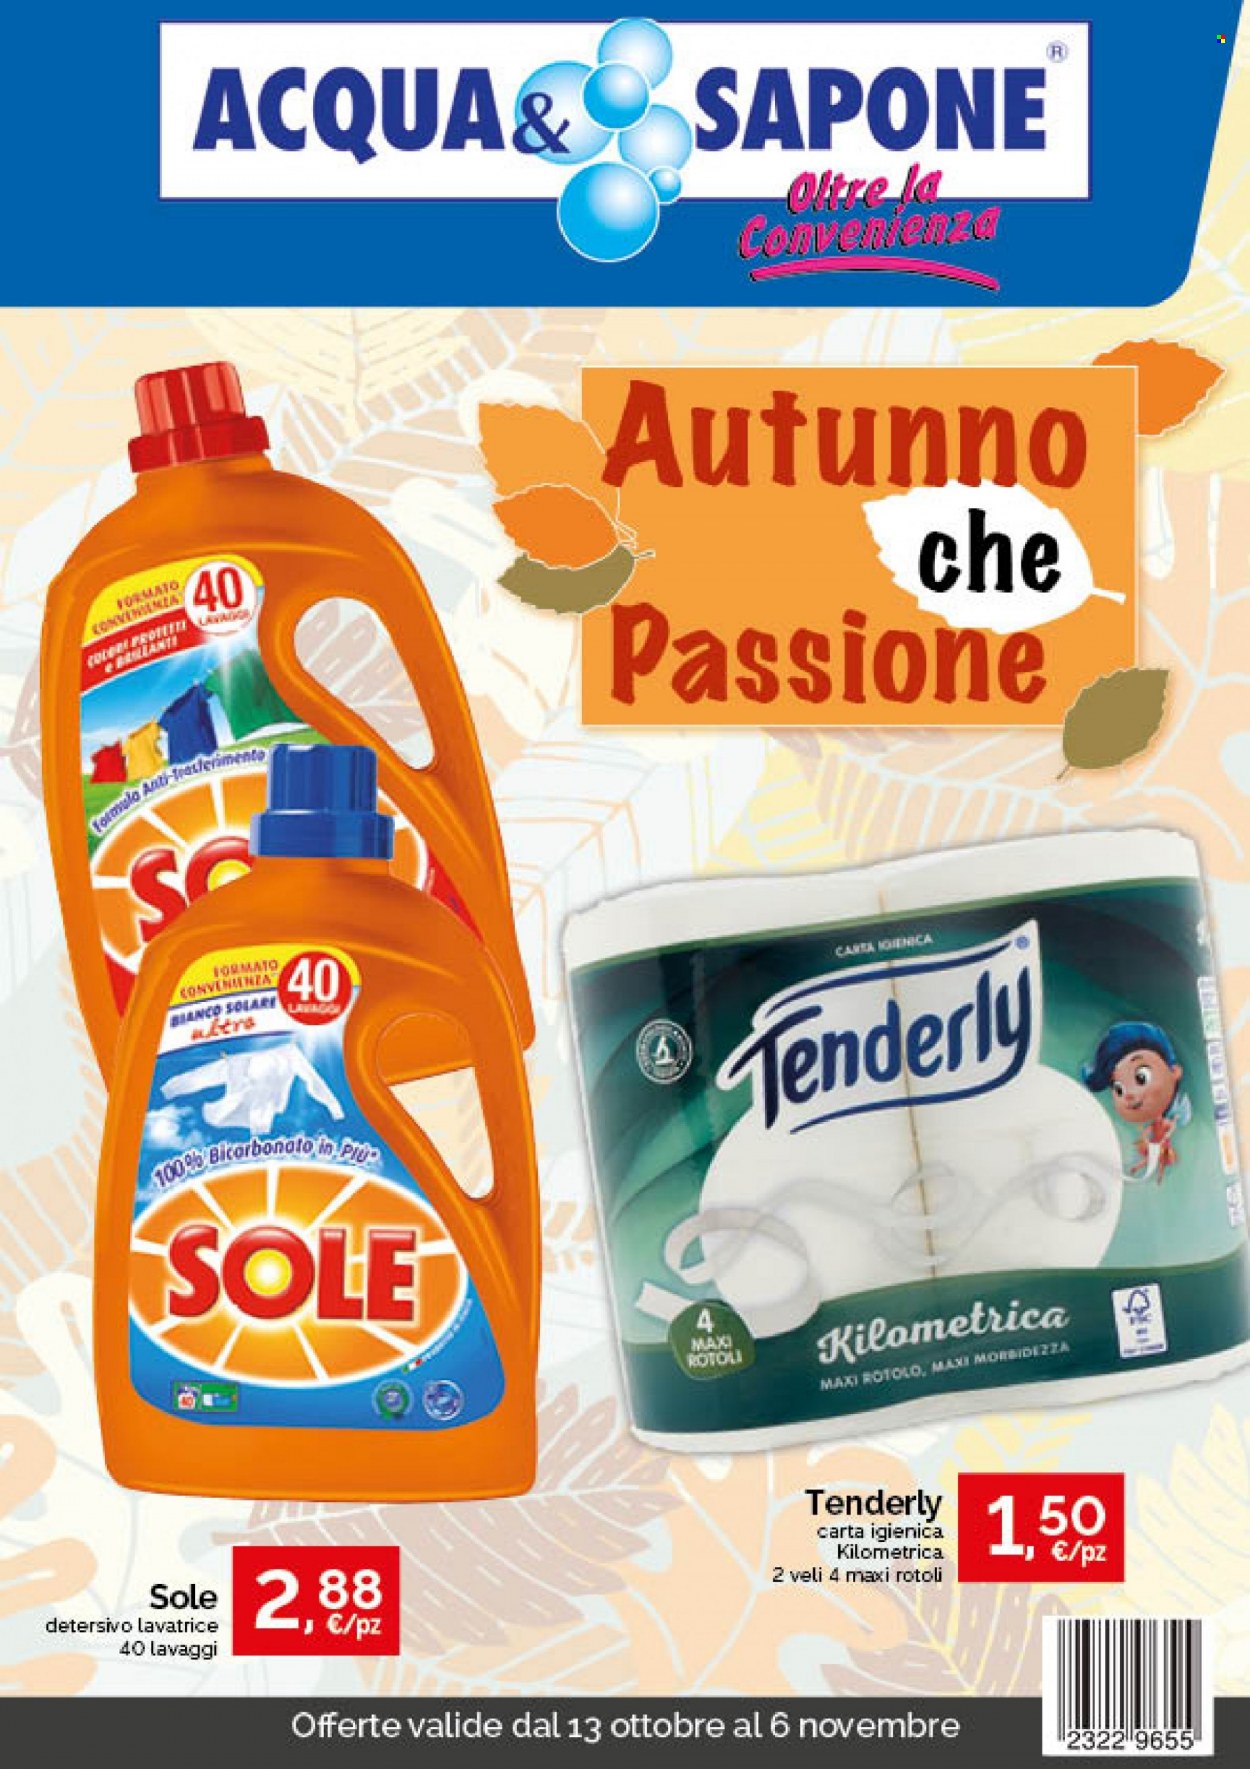 thumbnail - Volantino Acqua & Sapone - 13/10/2021 - 6/11/2021 - Prodotti in offerta - carta igienica, Tenderly, detersivo per lavatrice, sapone. Pagina 1.